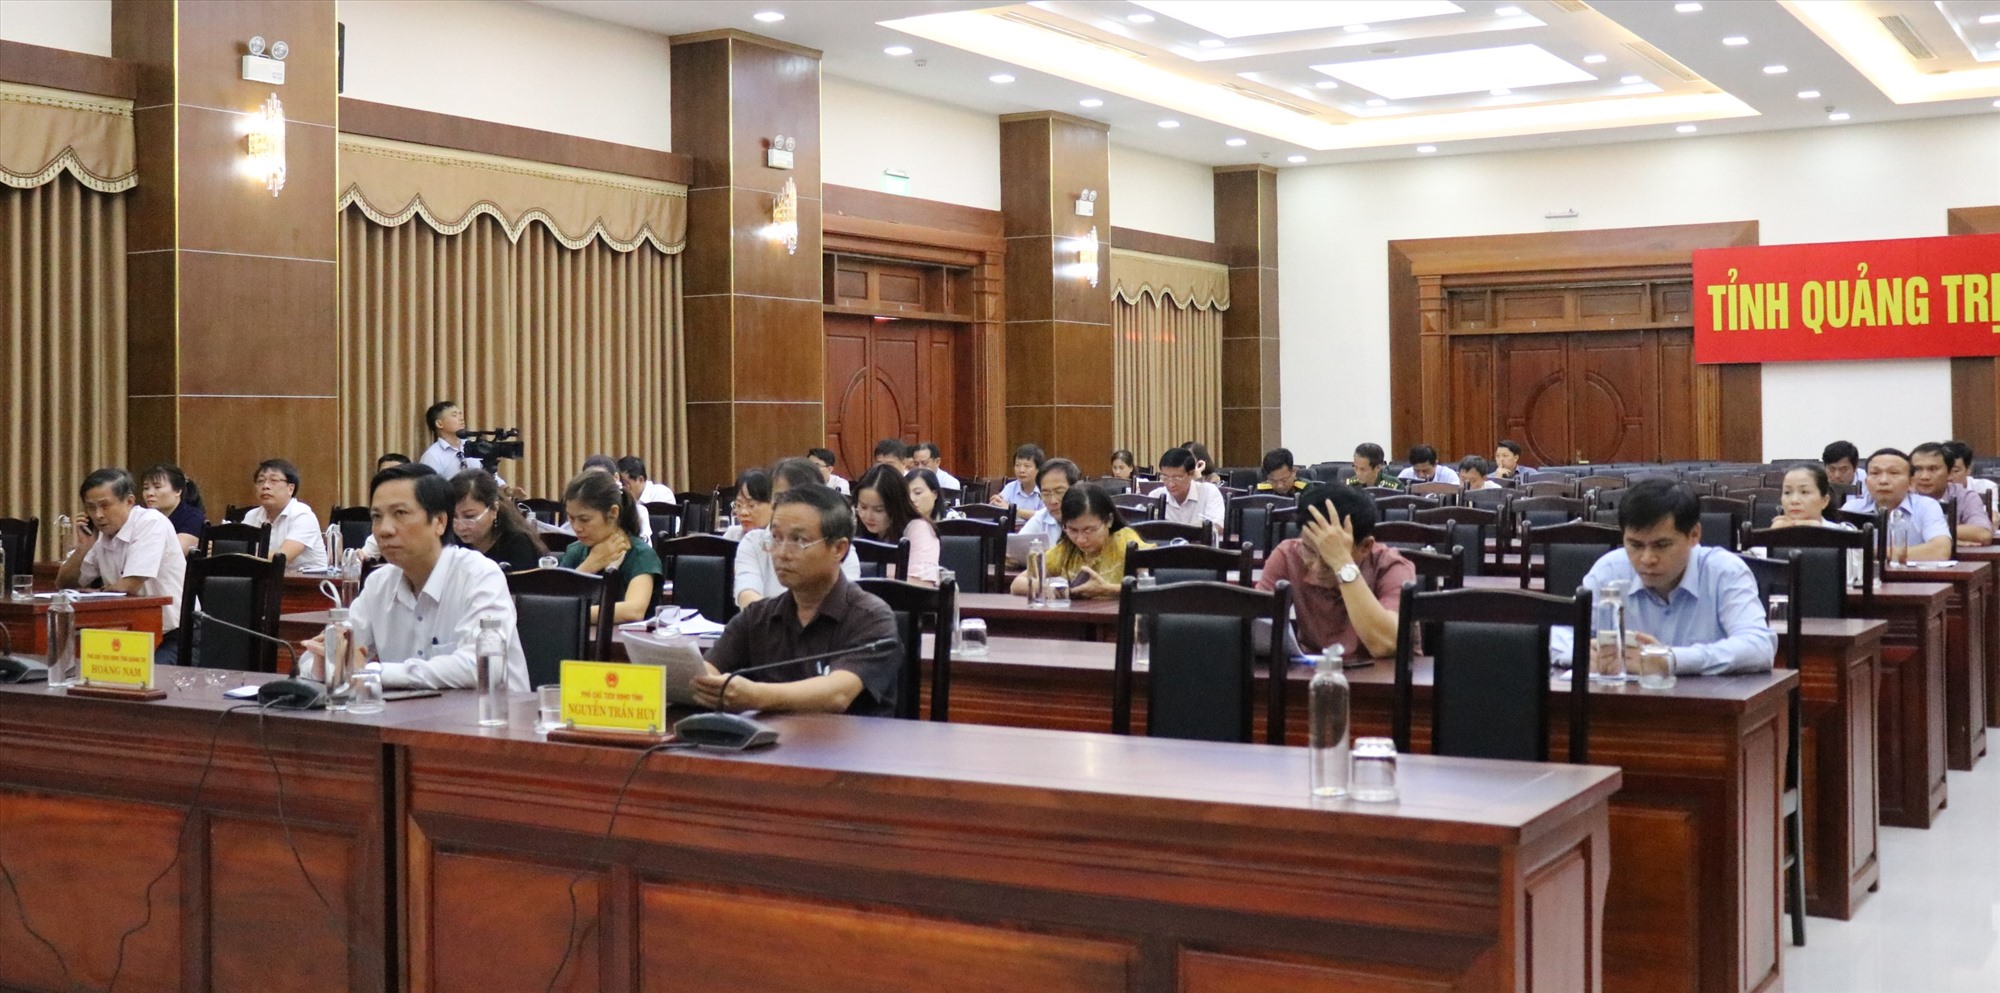 Các đại biểu tham dự hội nghị trực tuyến tại điểm cầu Quảng Trị -Ảnh: T.T